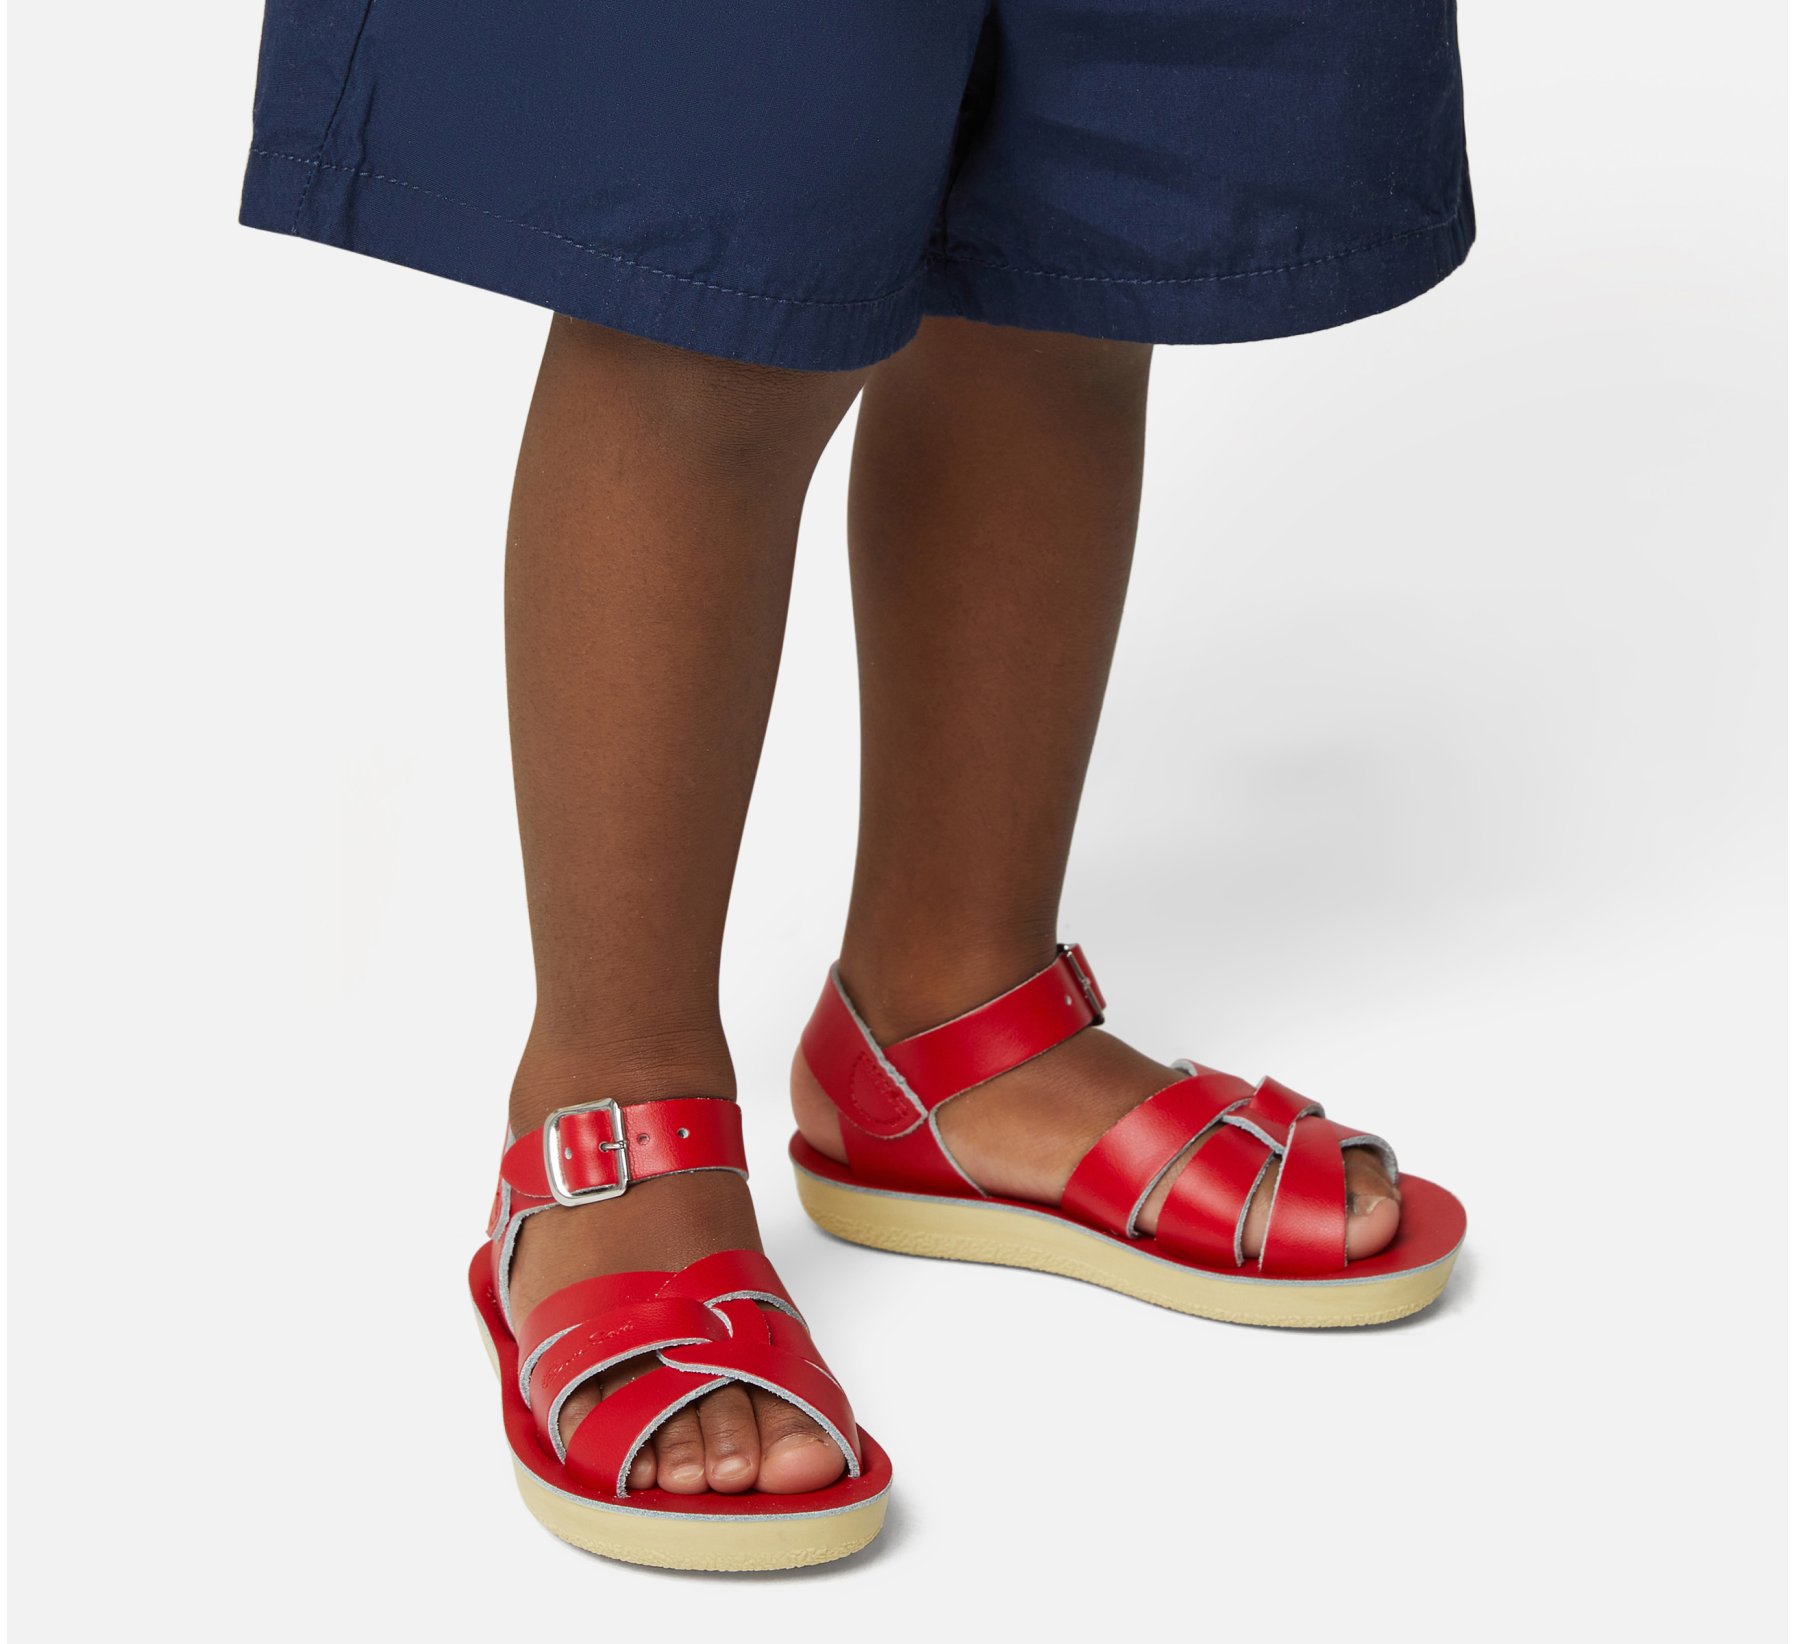 Swimmer Red Kids Sandals - Salt Water Sandals